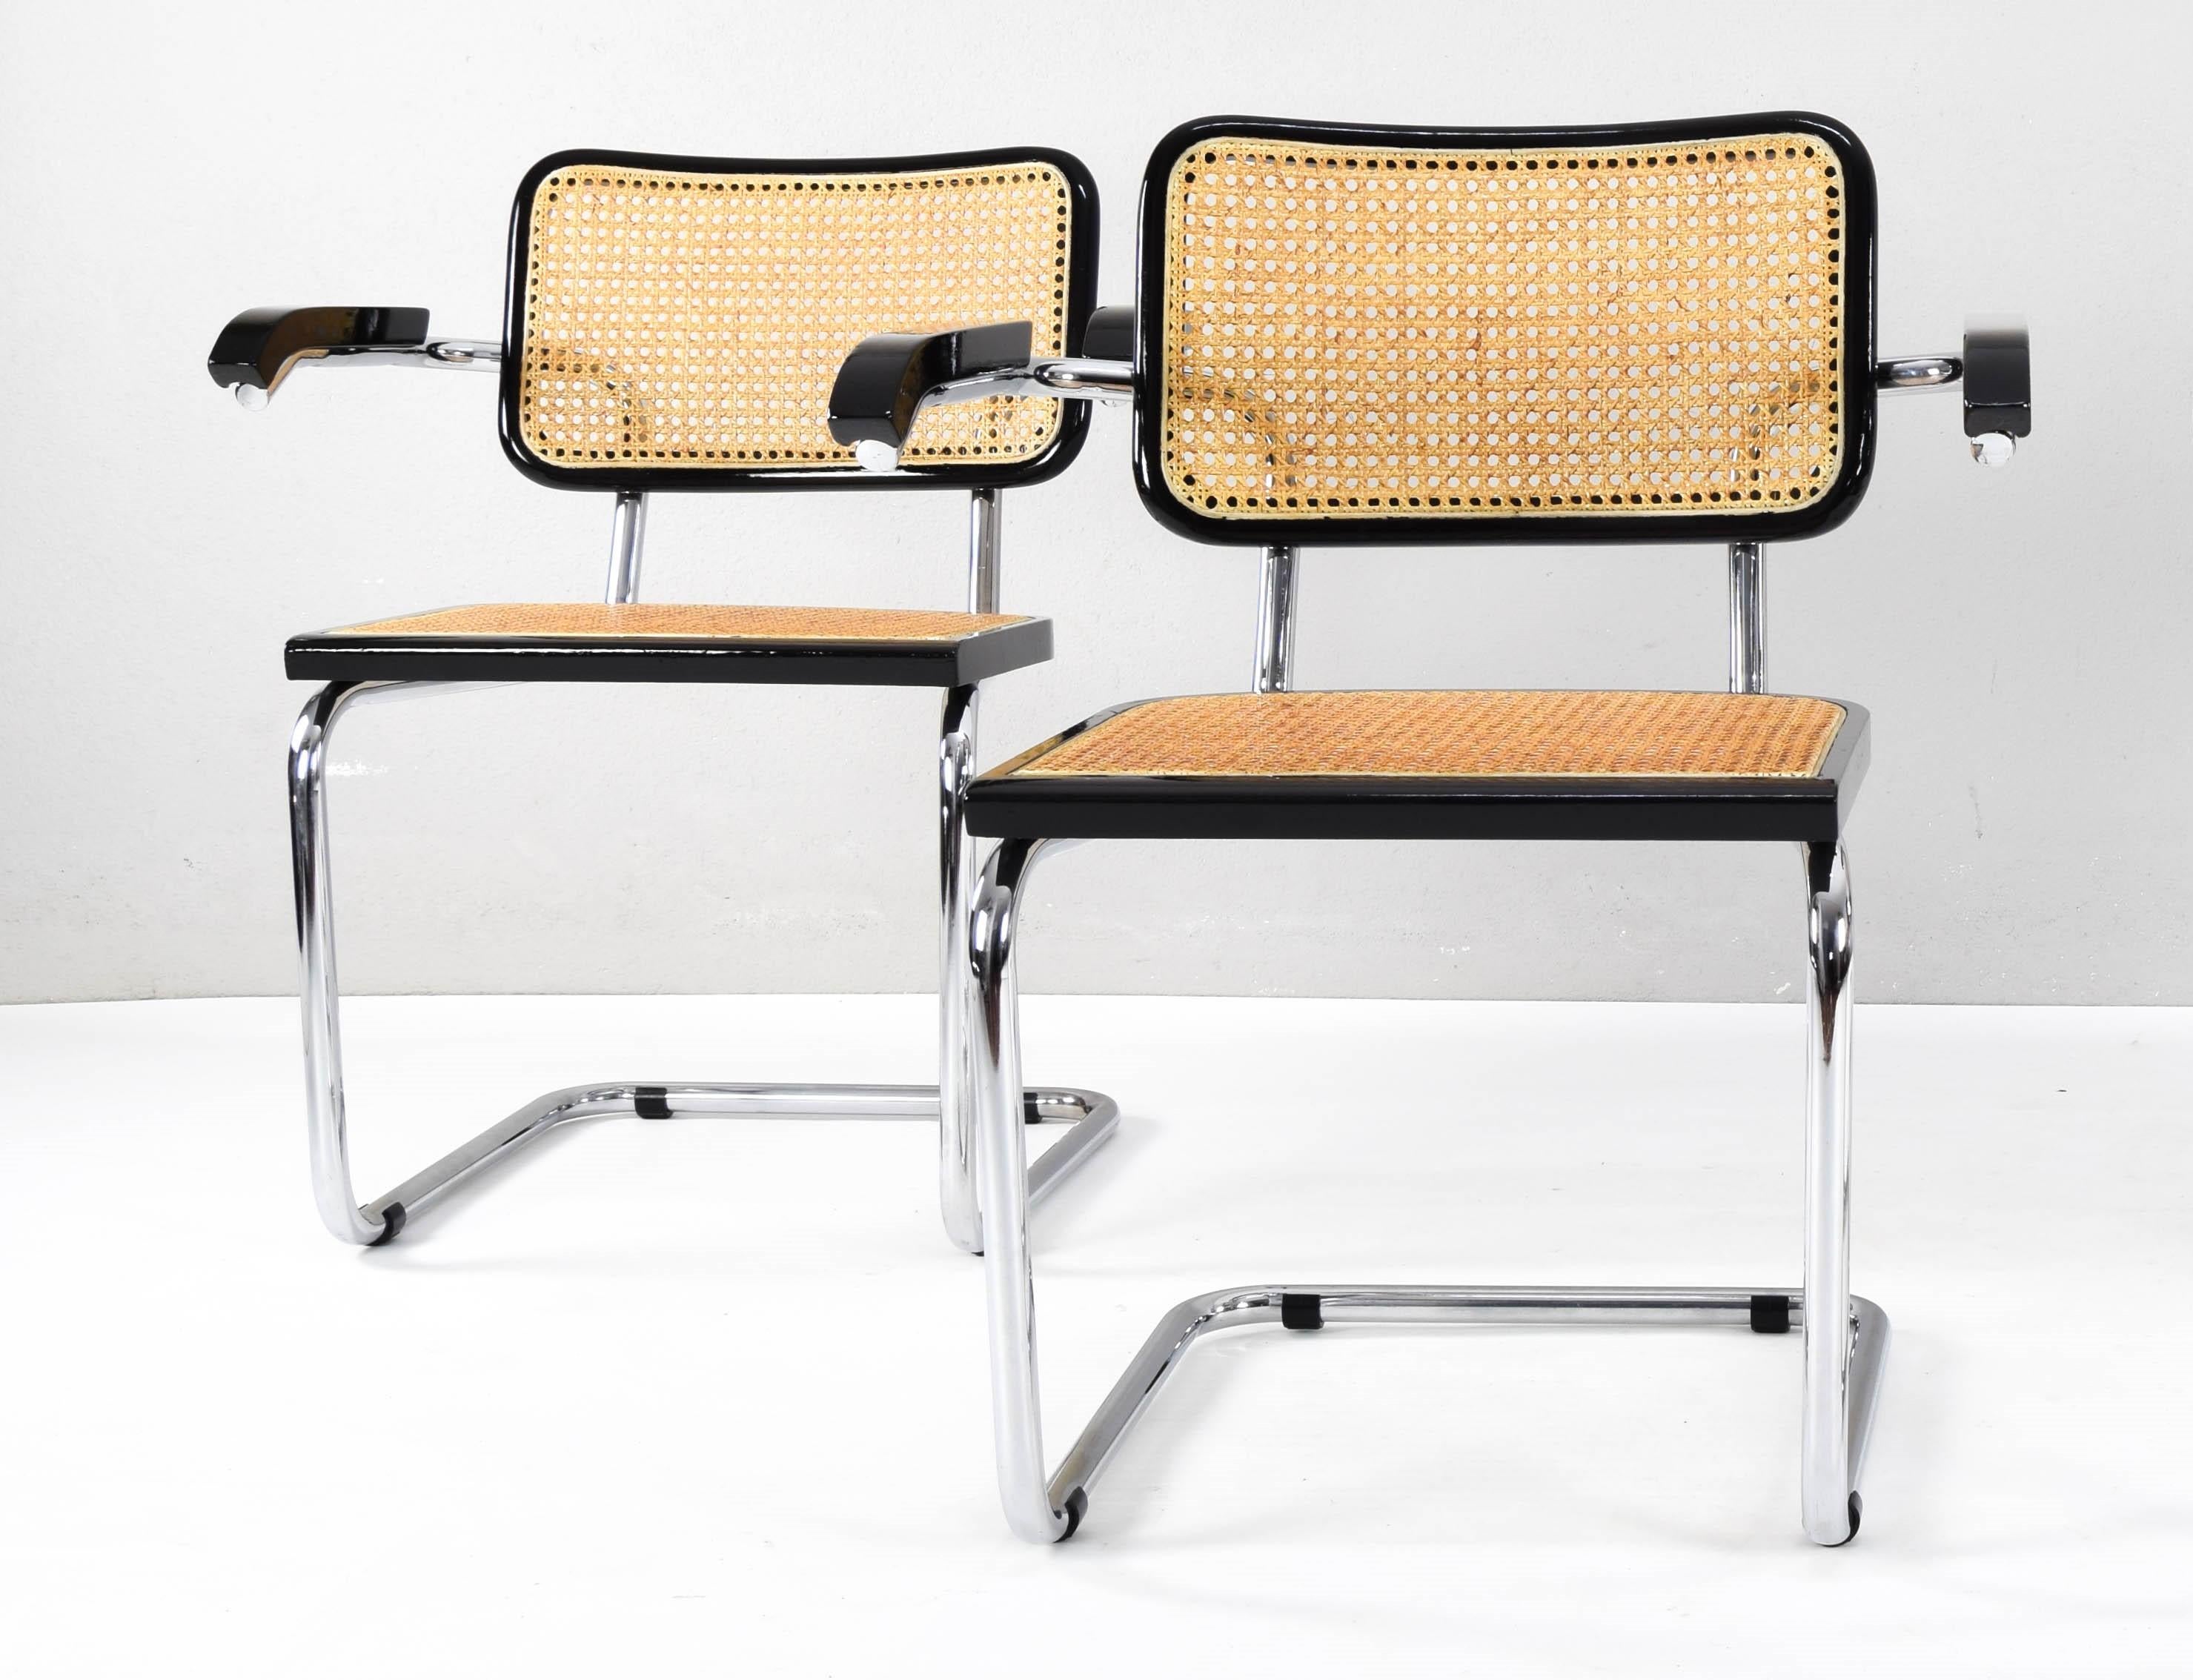 Schöner und ikonischer Satz von zwei Cesca-Stühlen, Modell B64, Ausgabe mit Armlehnen, hergestellt in Italien in den 70er Jahren.
Verchromte röhrenförmige Struktur mit abgenutzten Stellen, aber in gutem Zustand.
Die Struktur der Rückenlehne und des